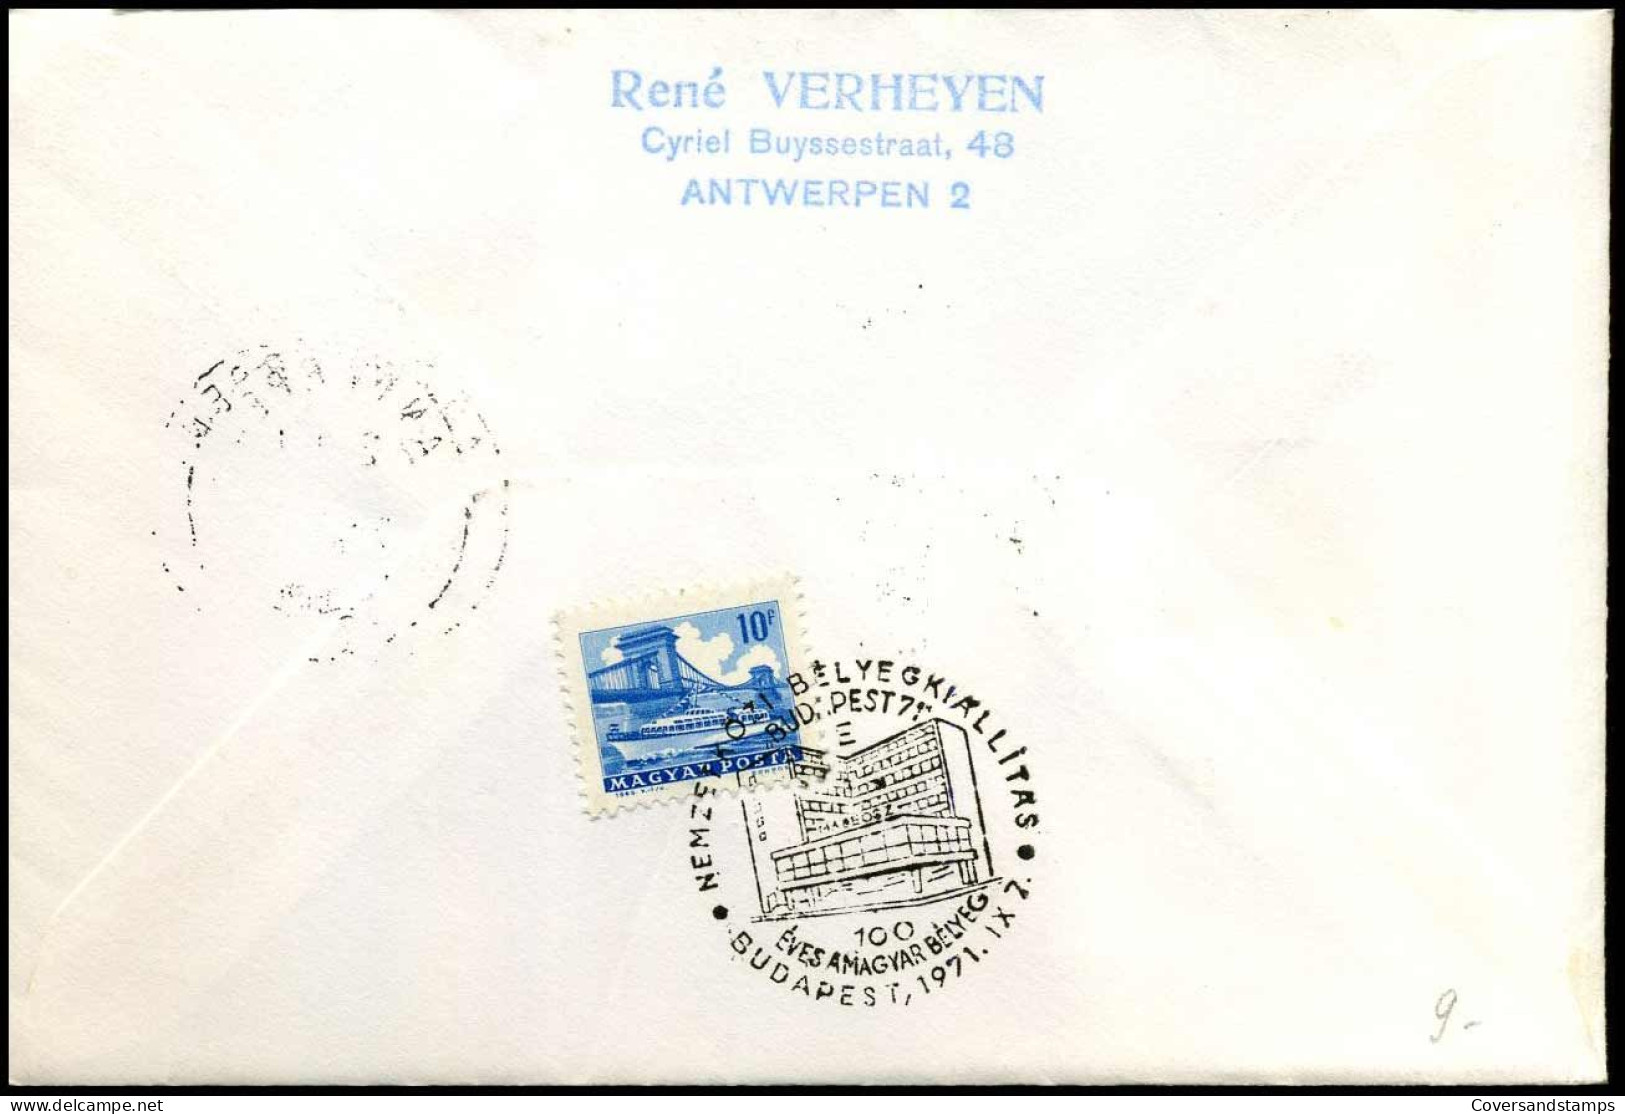 België Herdenkt De Eerste Postzegel Van Hongarije - "Budapest 71" Bijzondere Vlucht Antwerpen-Budapest - Lettres & Documents